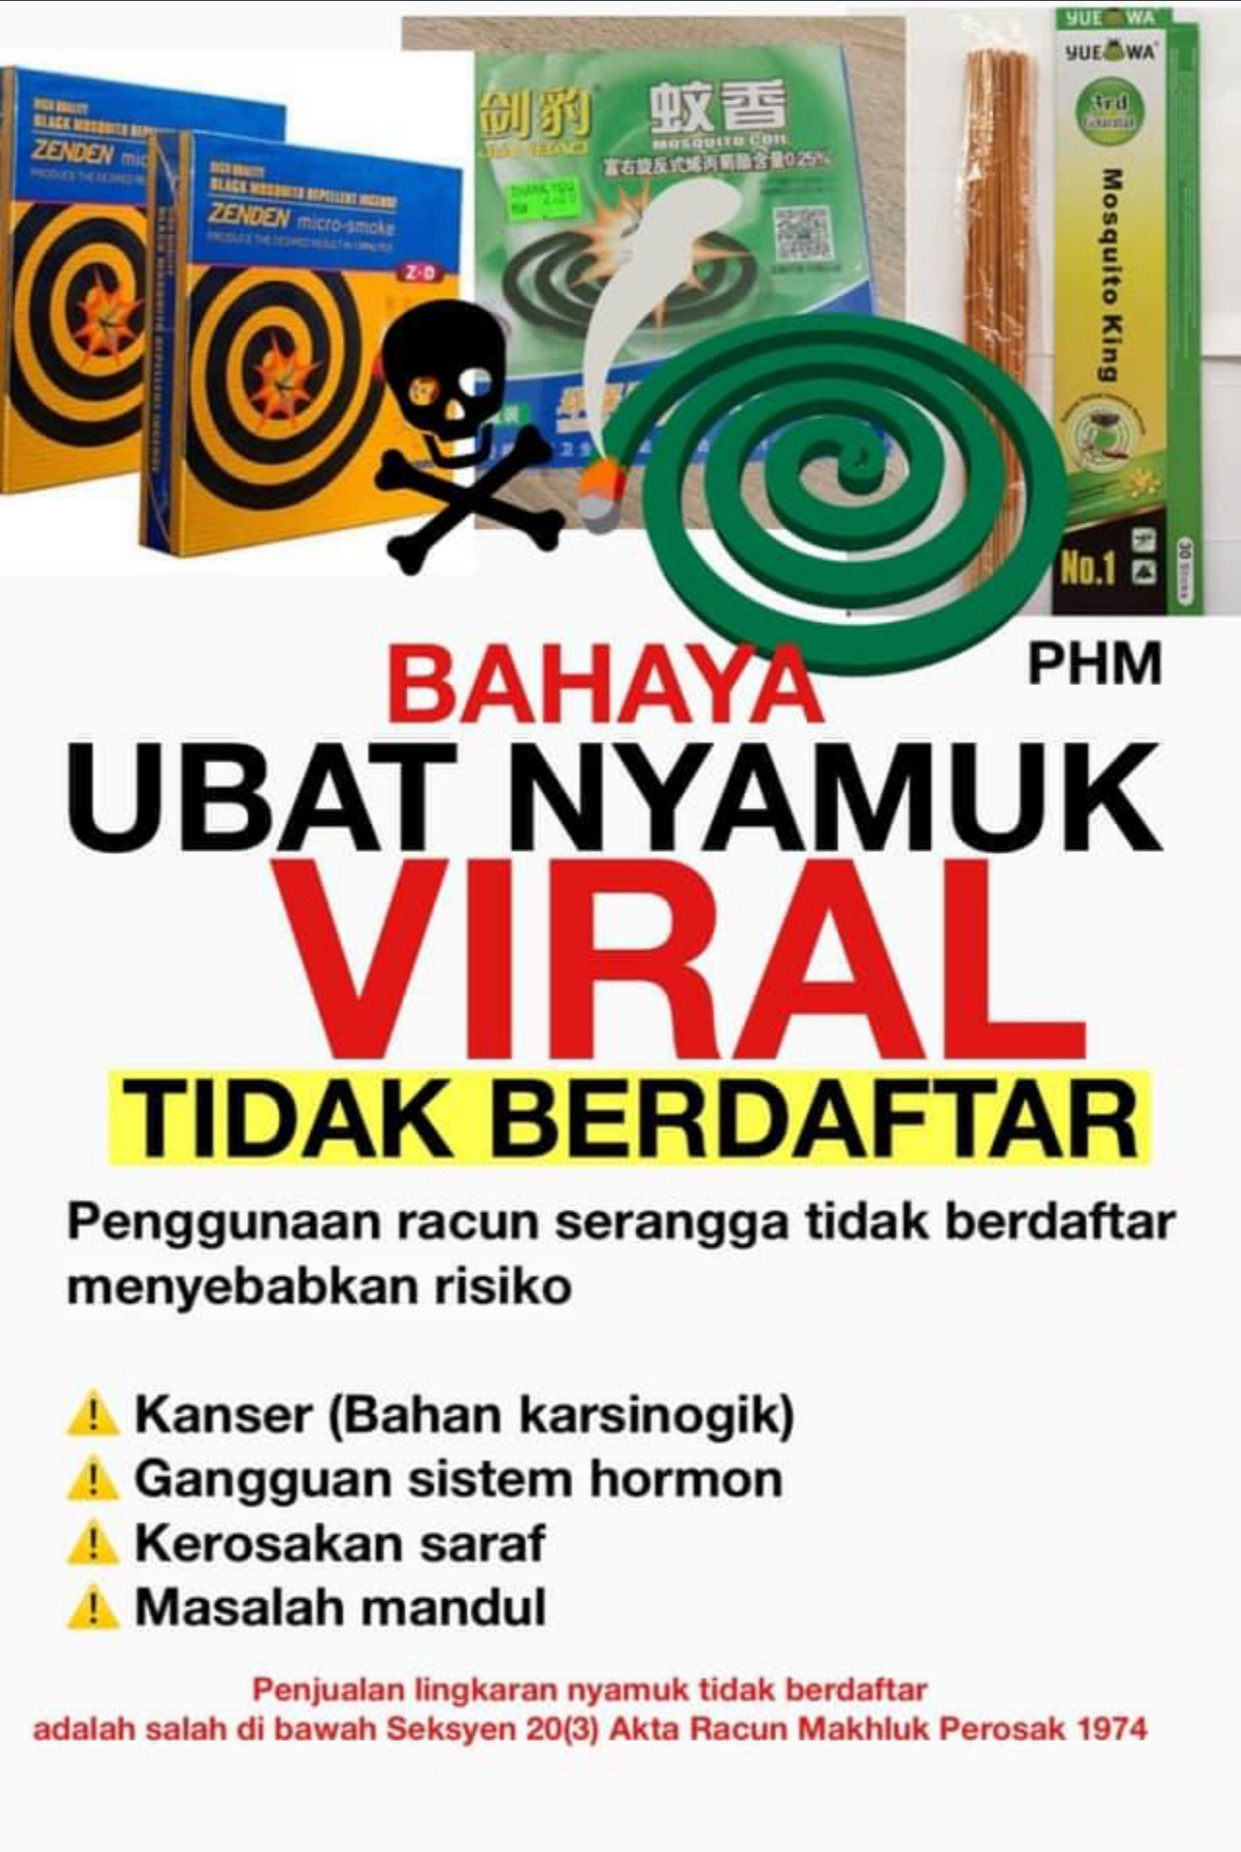 Ubat nyamuk viral beracun masih berleluasa di pasaran  The Malaya Post